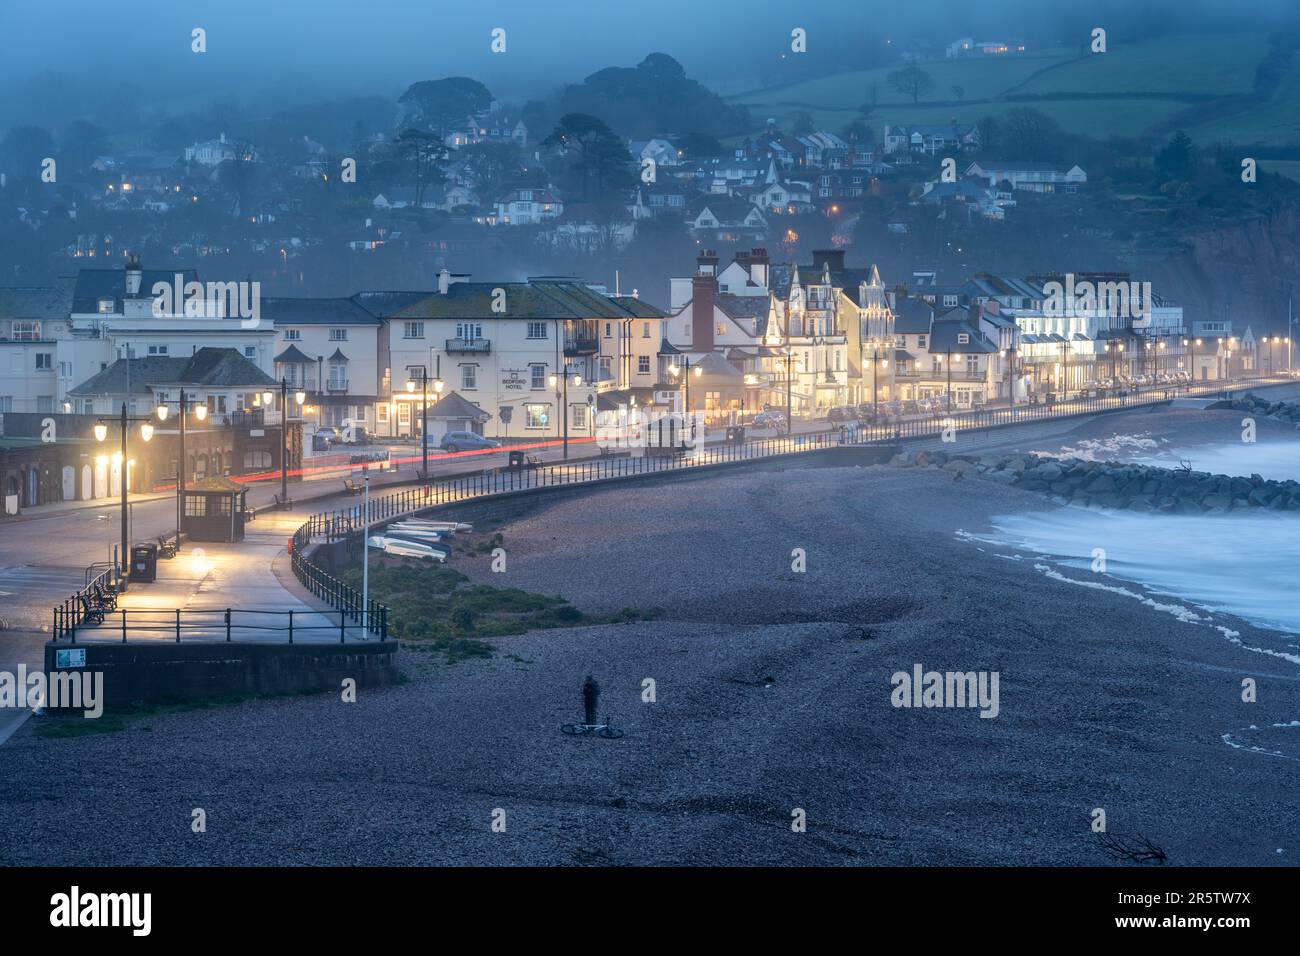 L'Esplanade du bord de mer est éclairée au crépuscule dans la ville balnéaire de Sidmouth, sur la côte jurassique de Devon. Banque D'Images